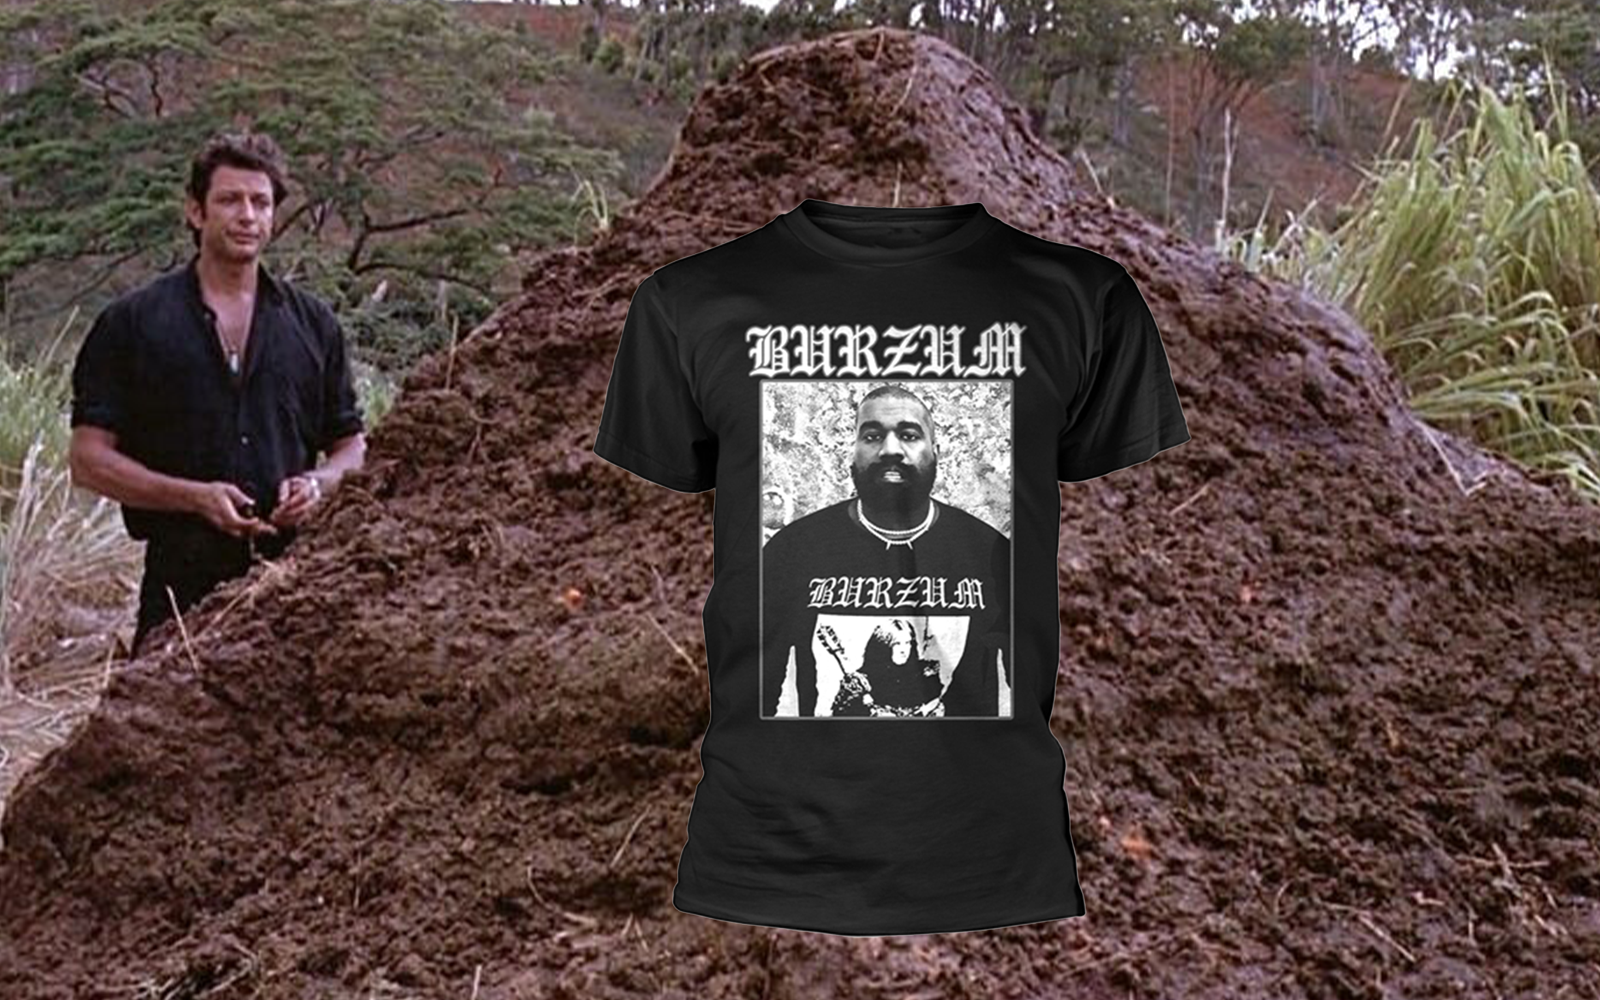 BURZUM теперь продает футболку с изображением Канье Уэста в футболке BURZUM